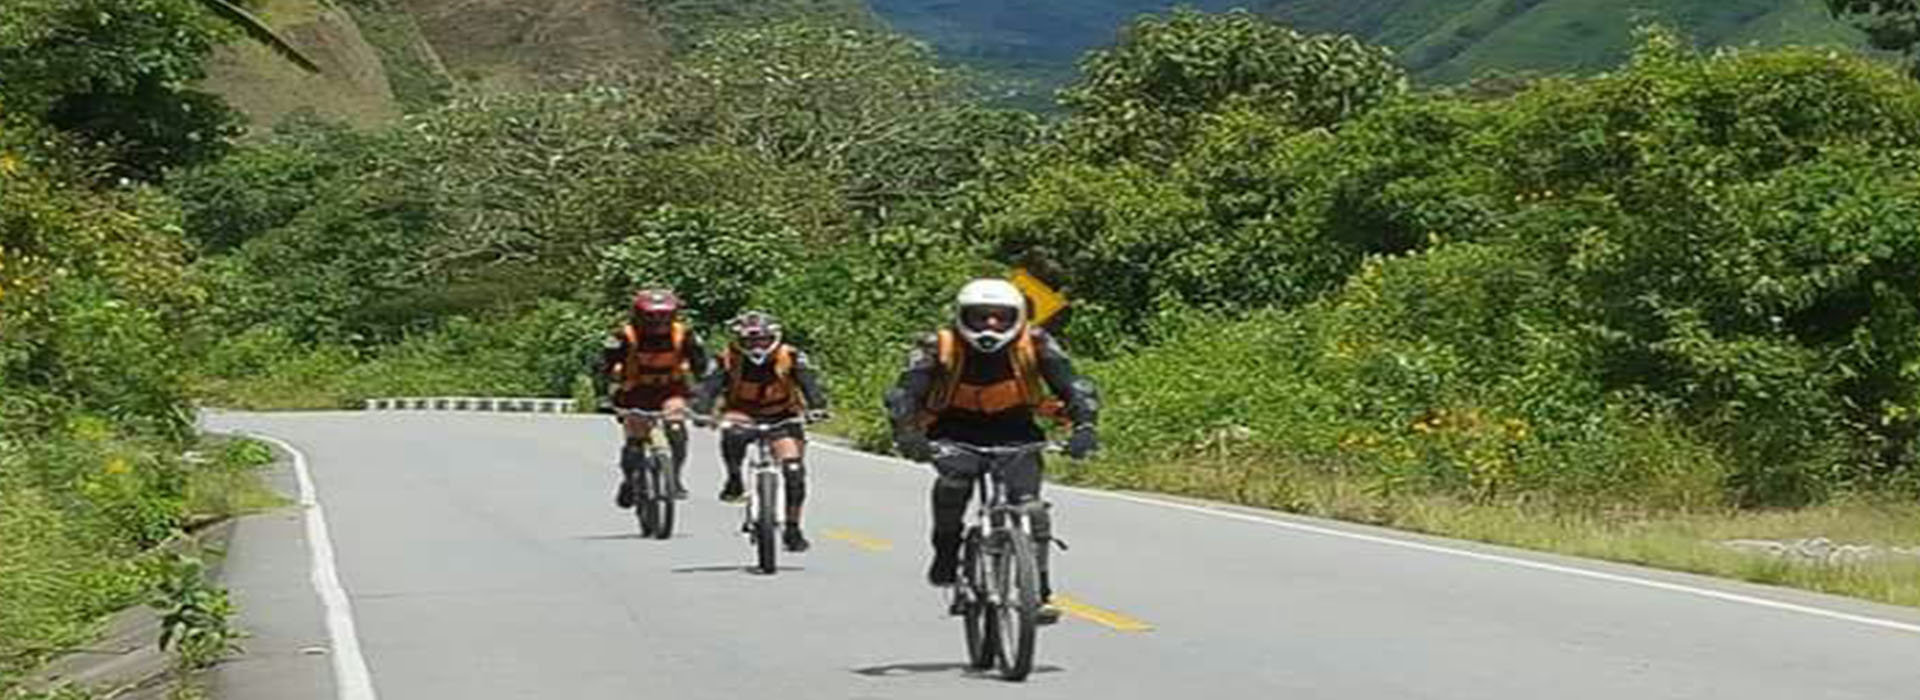 Afbeeldingsresultaat voor inca jungle bike tour